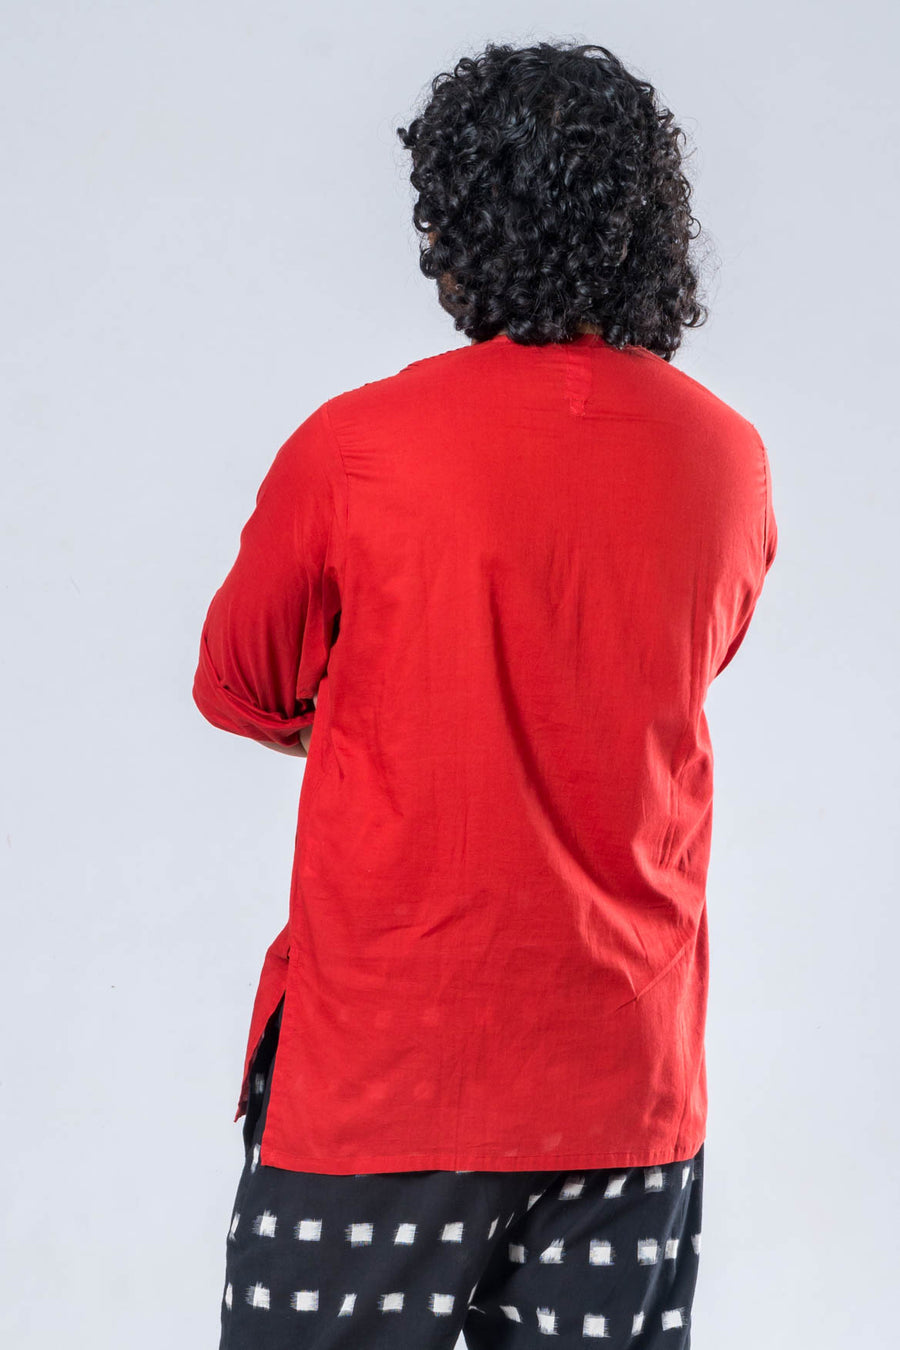 Organic Cotton Red Top and Black Ikat Pant - JANA SET